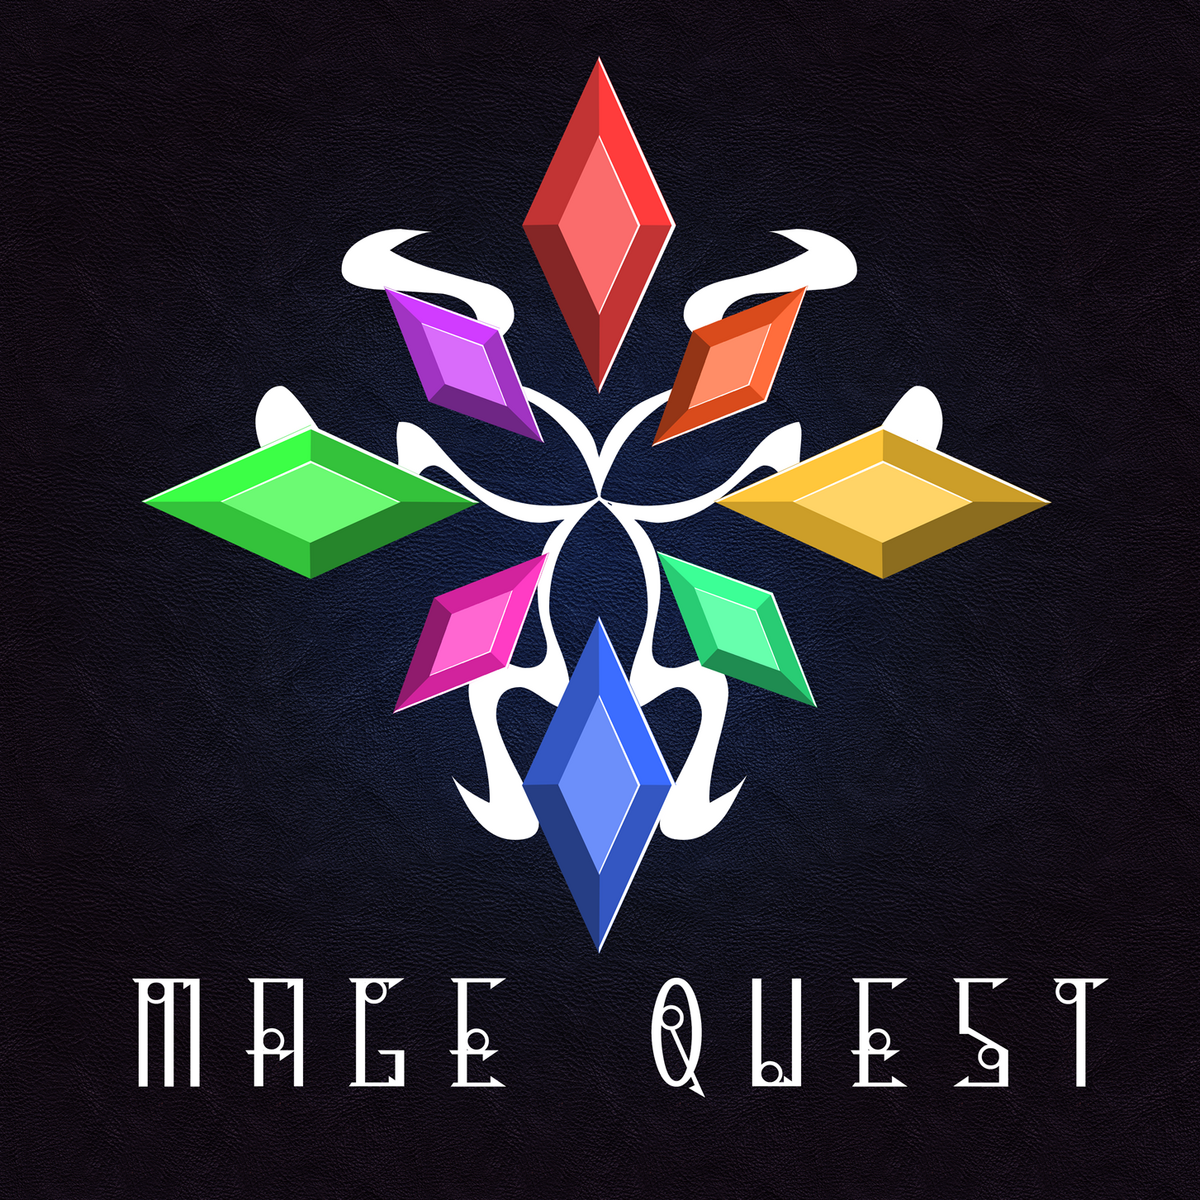 Ftb quests 1.20 1. FTB Quests. FTB лого. FTB Quests готовые квесты. FTB Mage Quest.